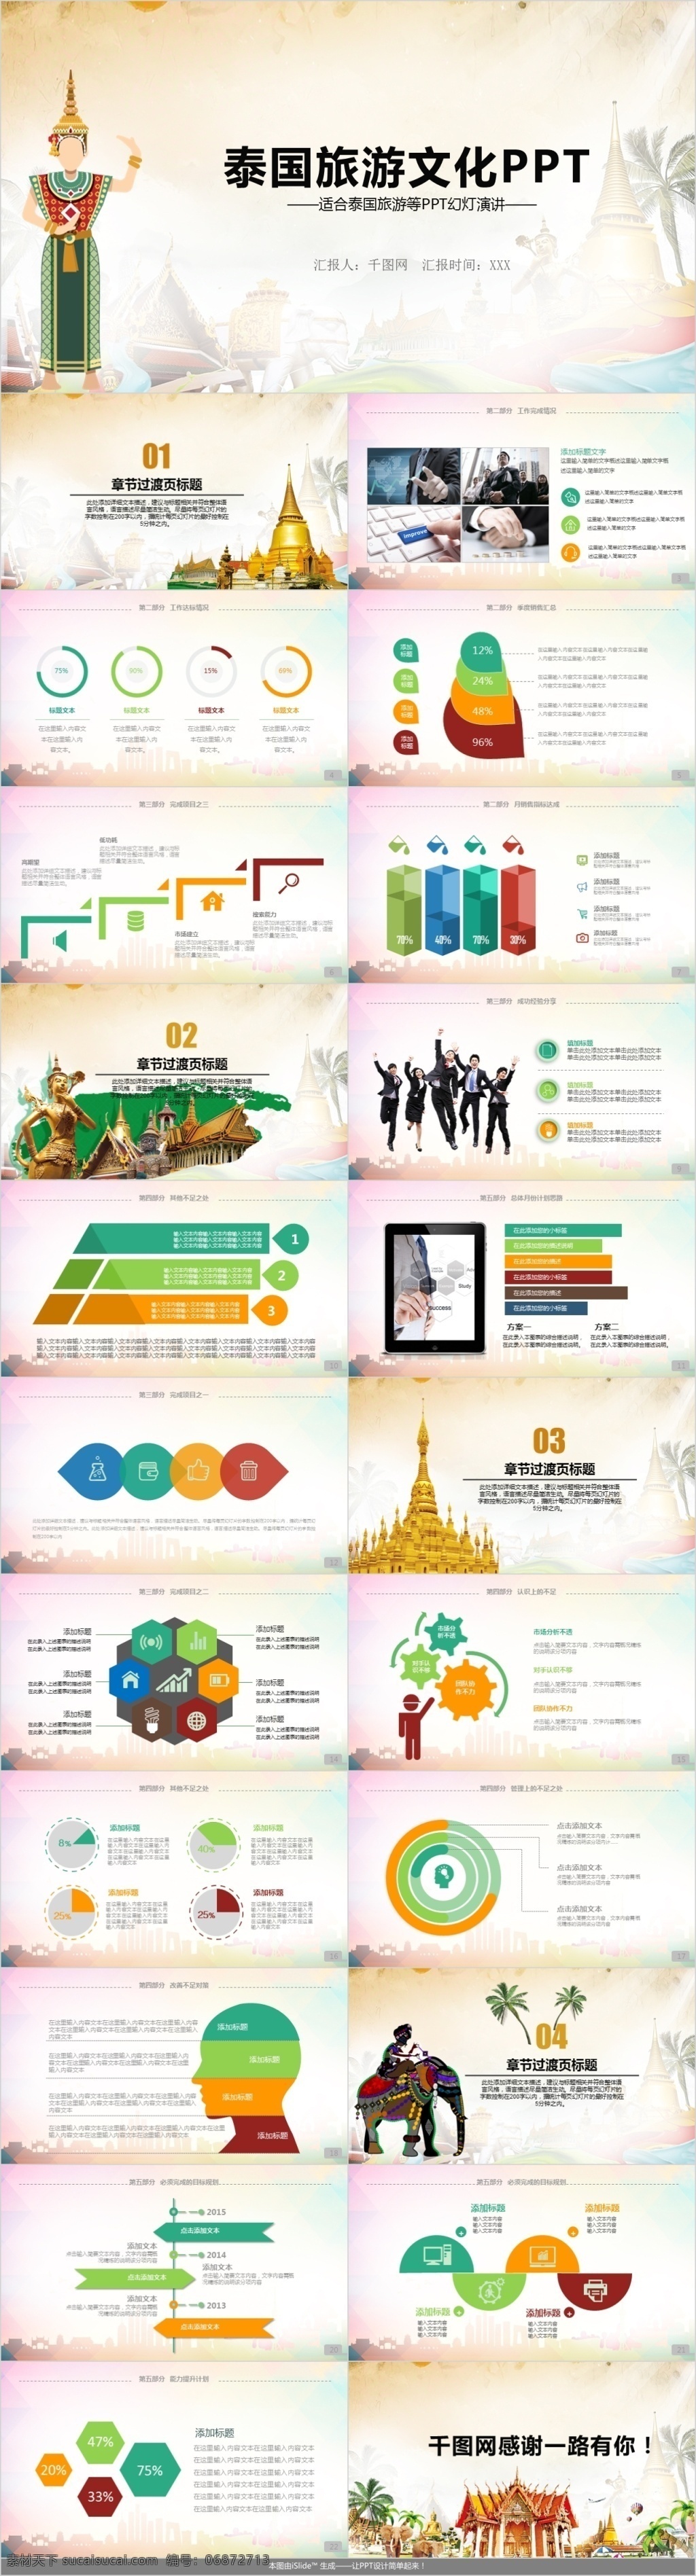 简约 大气 泰国 文化 旅游产品 发布 模板 旅游 产品